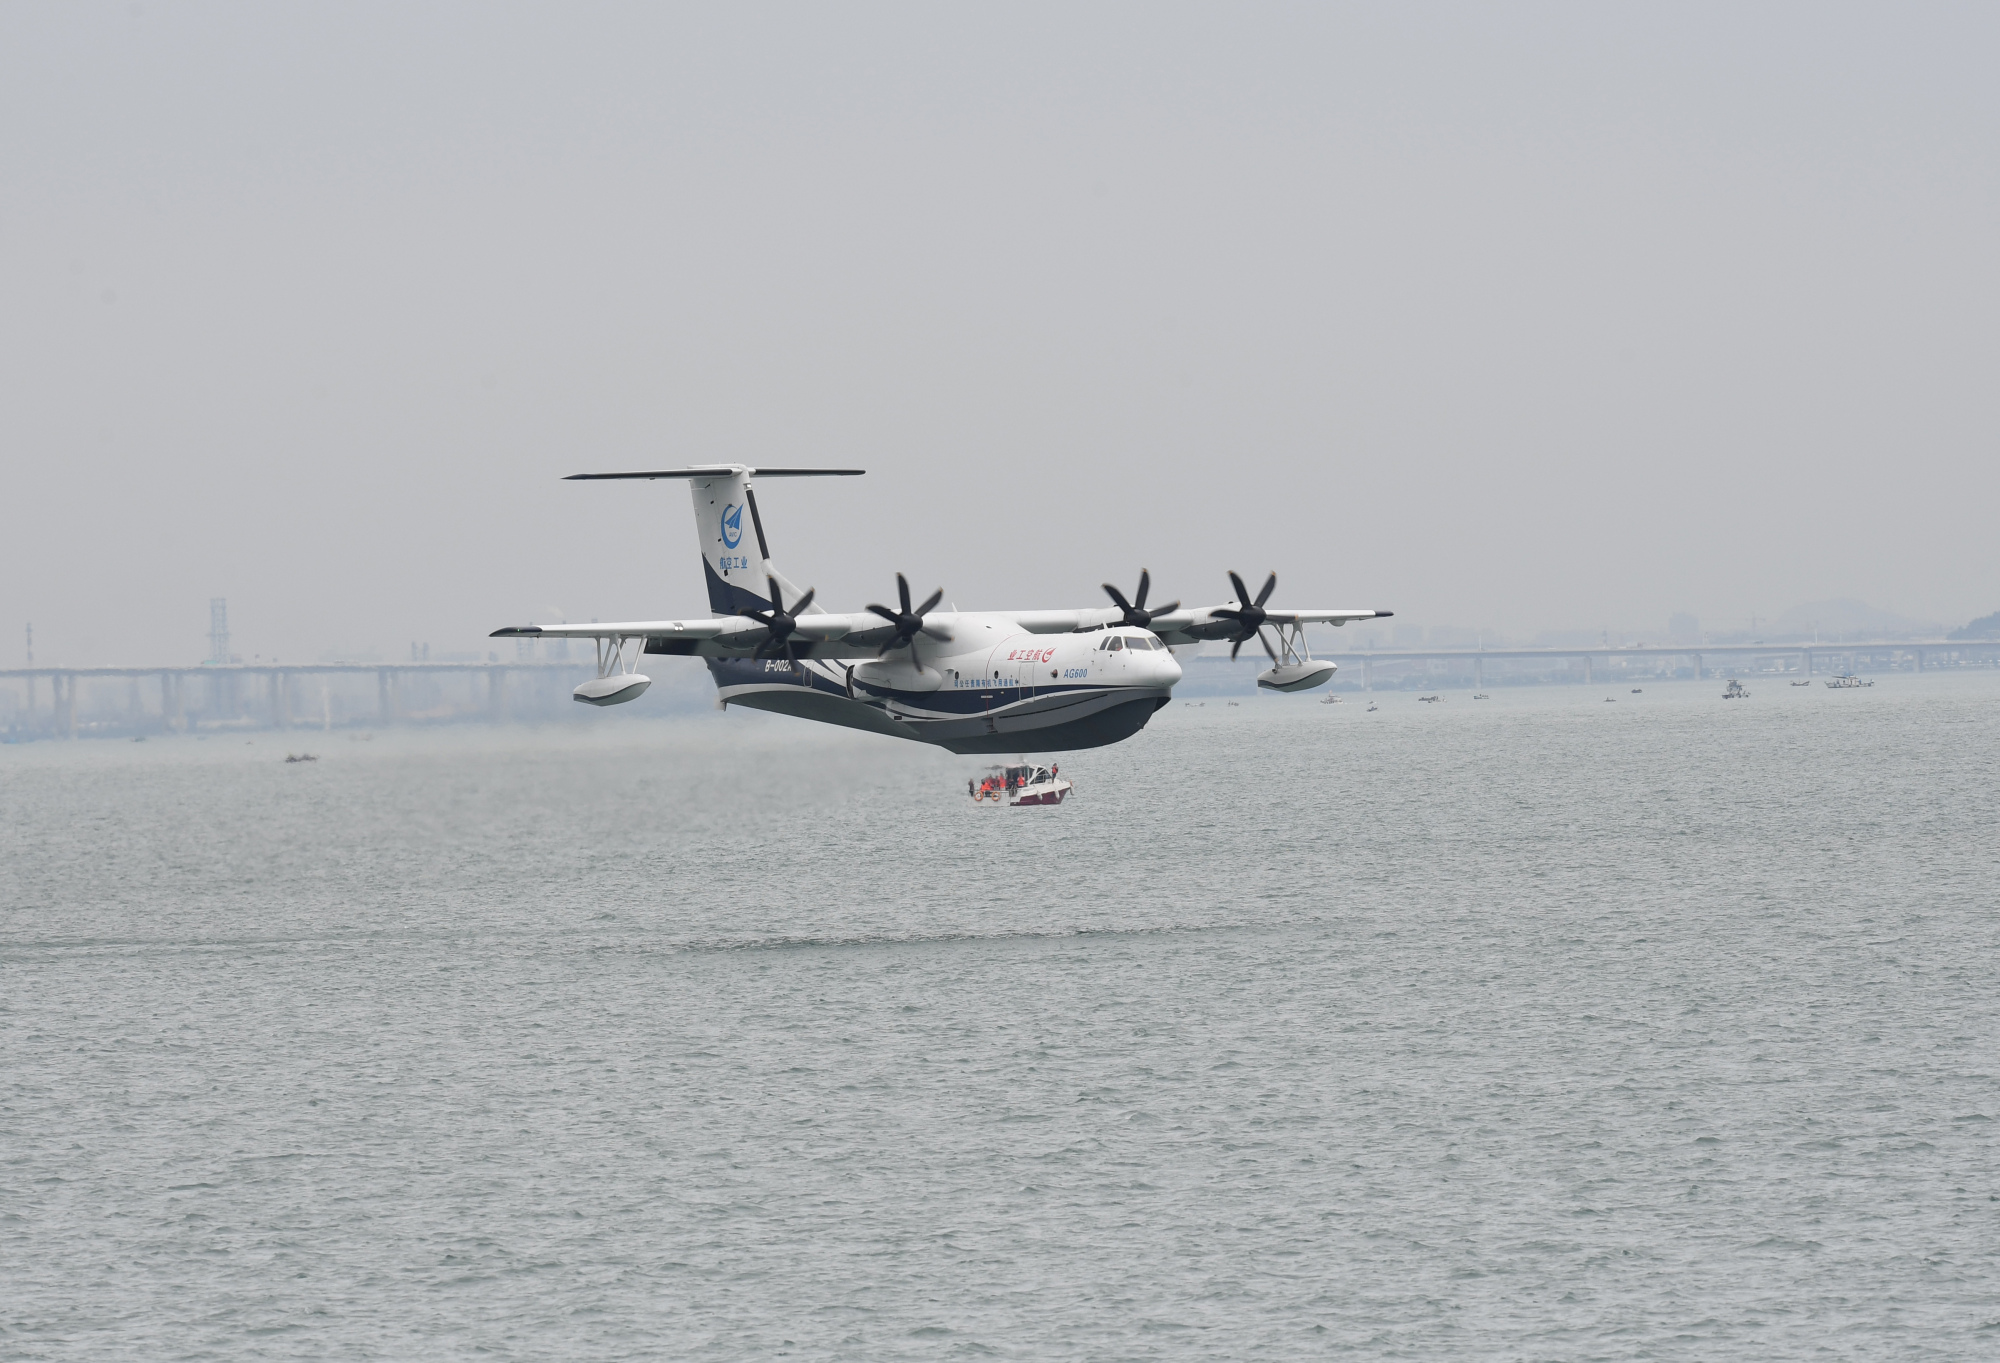 中国水陆两栖大飞机鲲龙ag600完成海上首飞